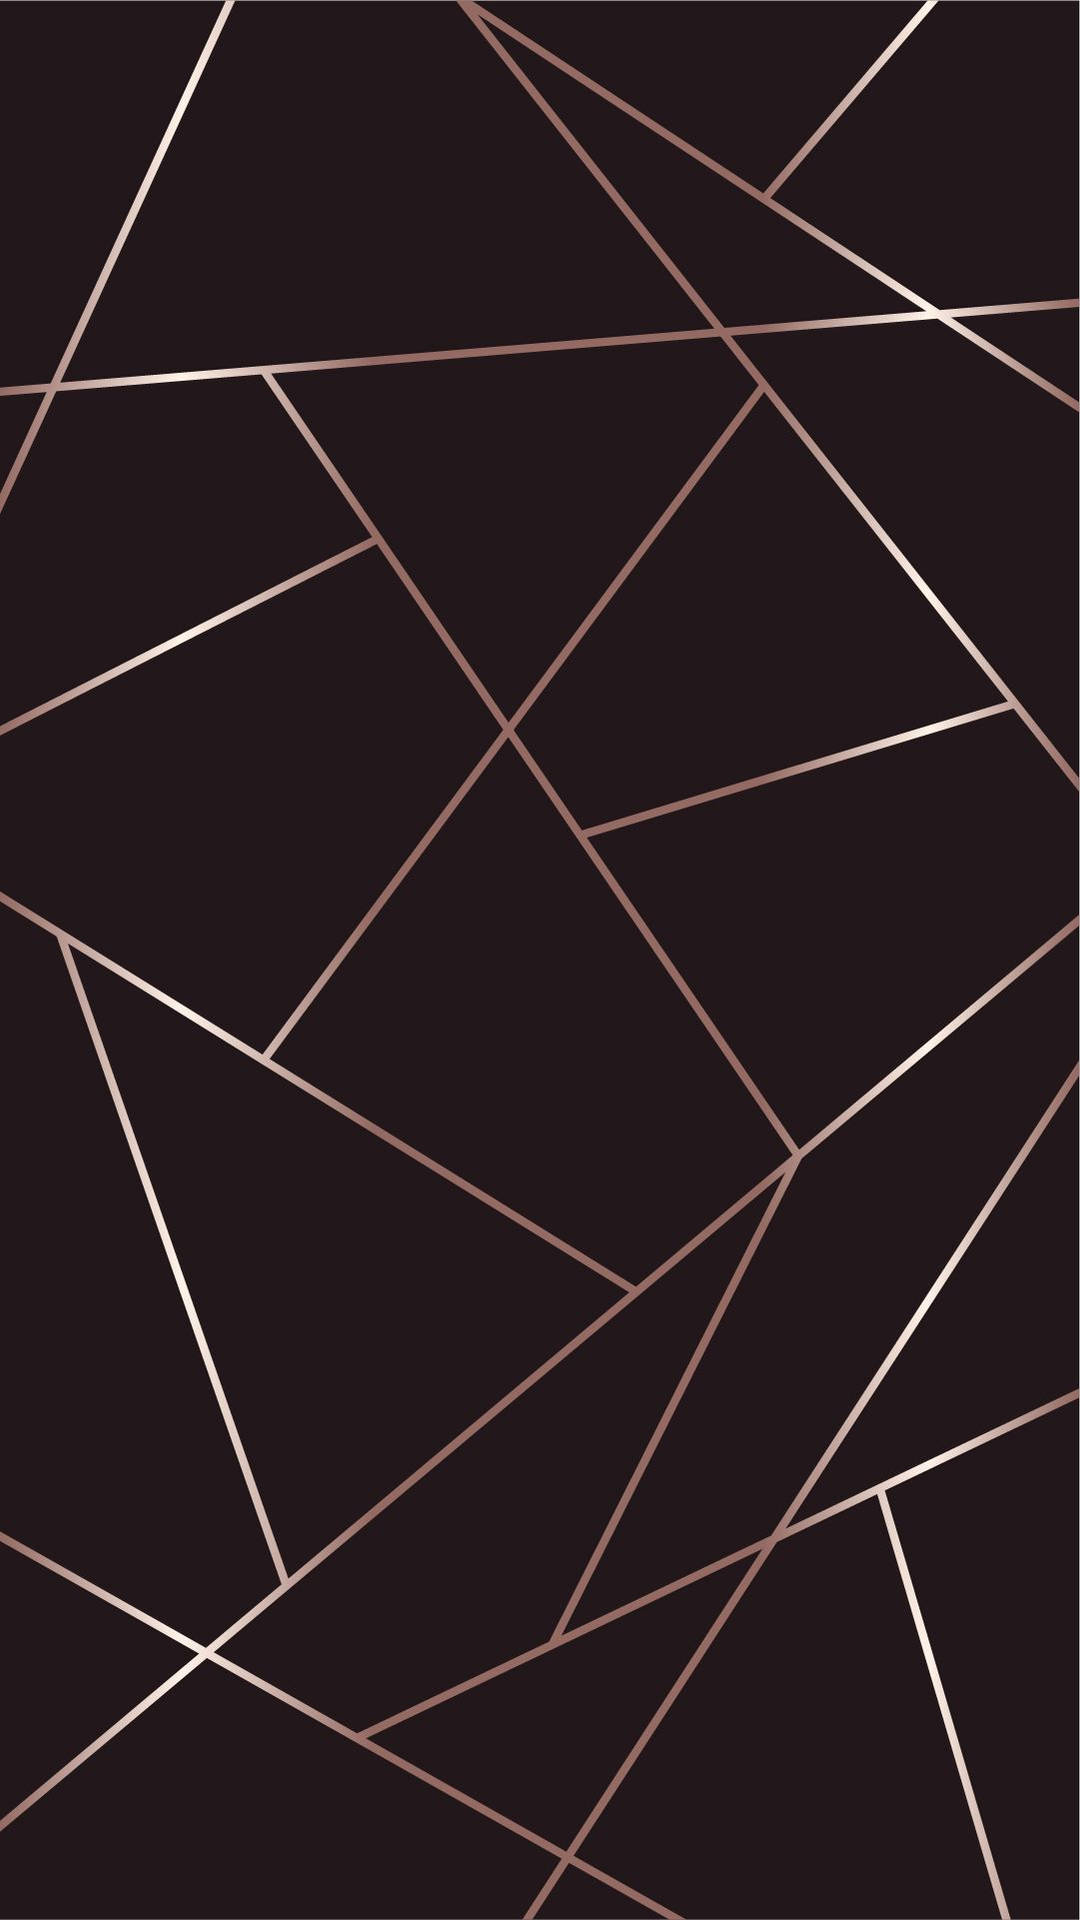 Schwarzesund Pinkes Geometrisches Design. Wallpaper